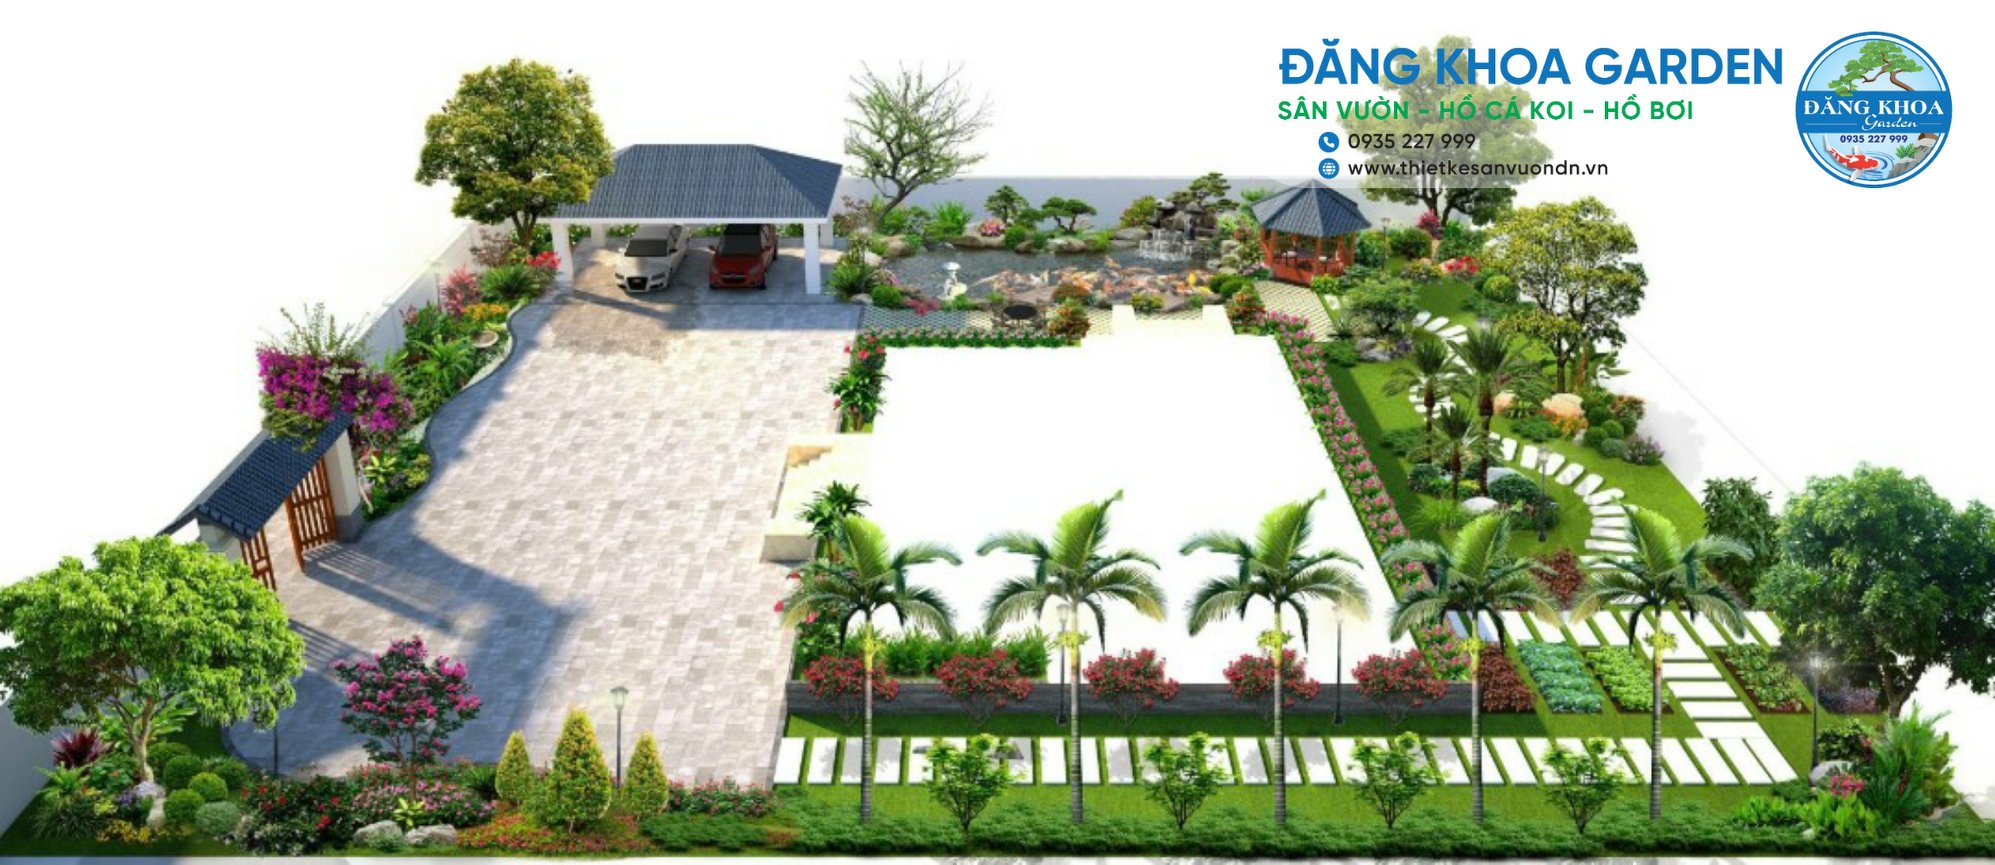 Thiết kế thi công sân vườn Đà Nẵng uy tín| Đăng Khoa Garden 5